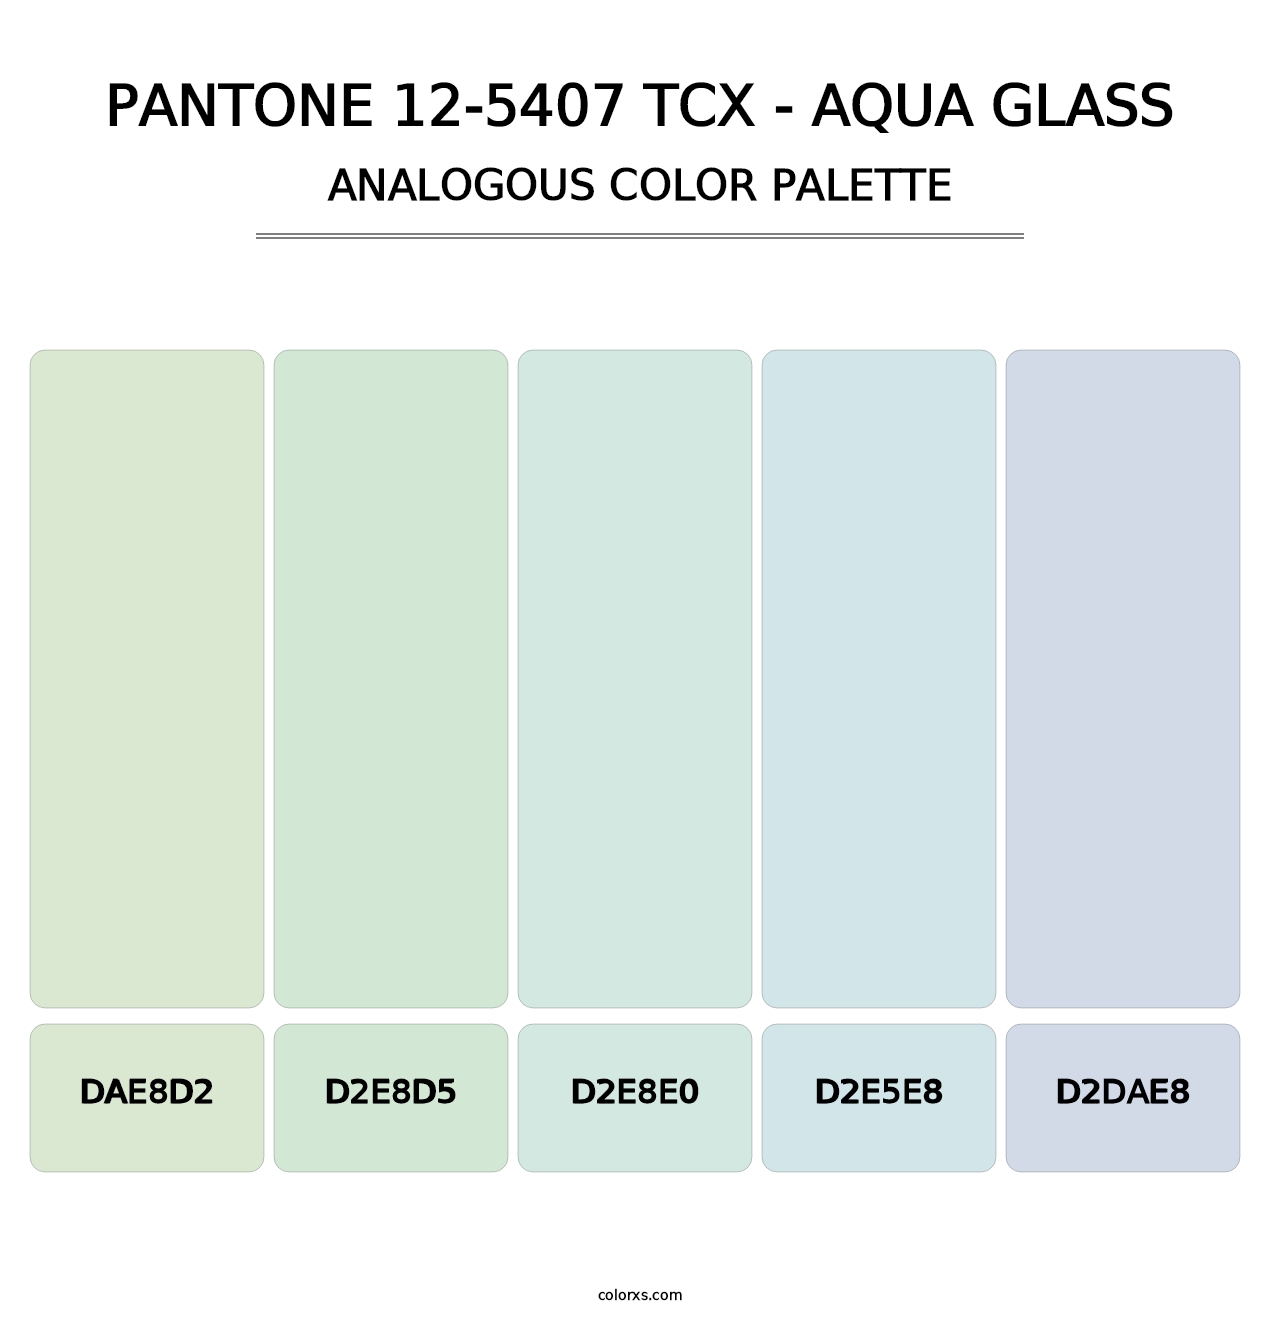 PANTONE 12-5407 TCX - Aqua Glass - Analogous Color Palette